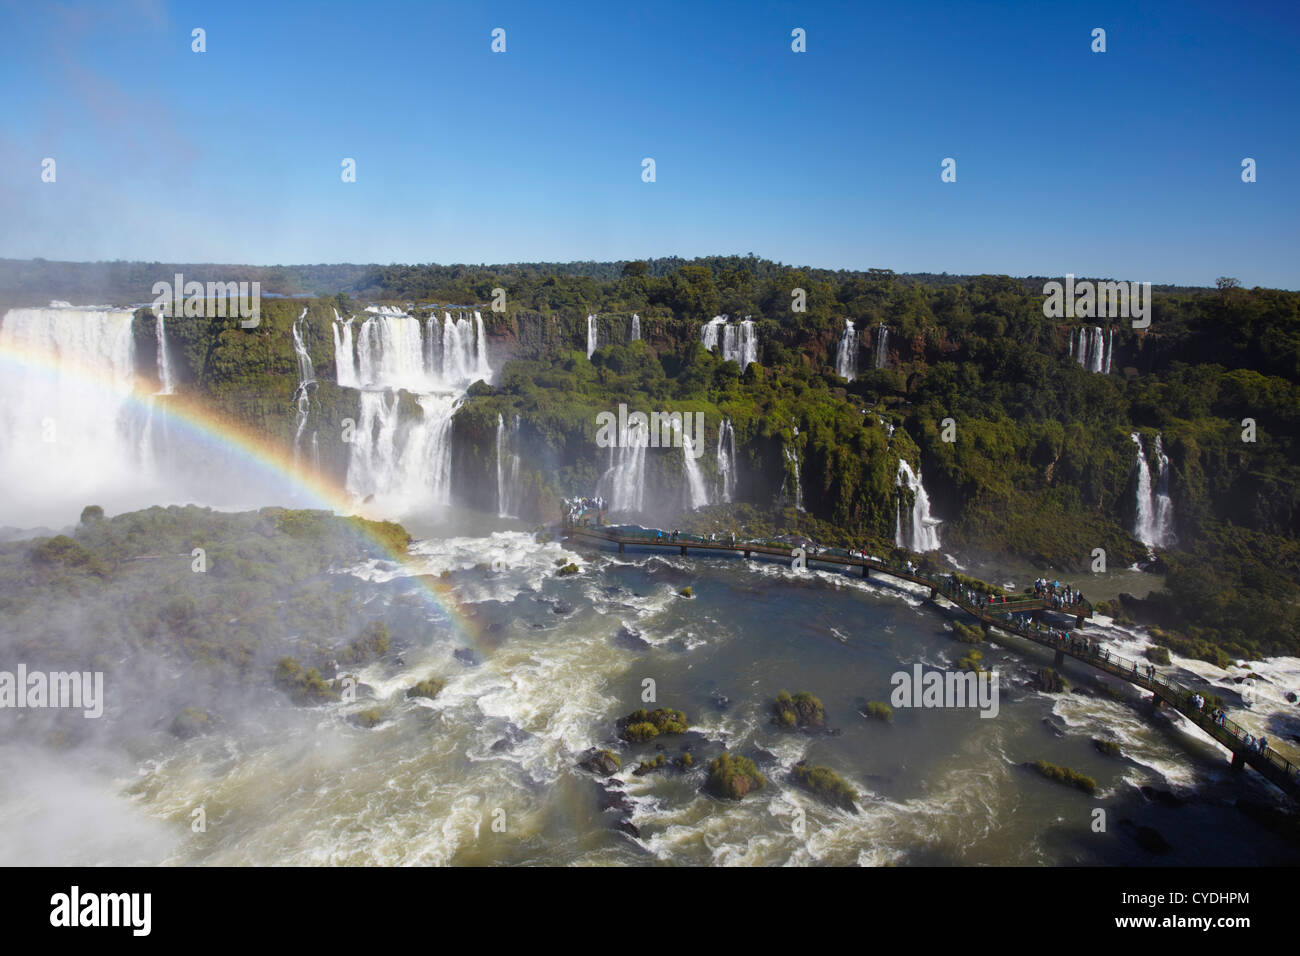 Les gens dans le passage libre à Iguacu Iguacu Falls, parc national, l'État de Parana, Brésil Banque D'Images